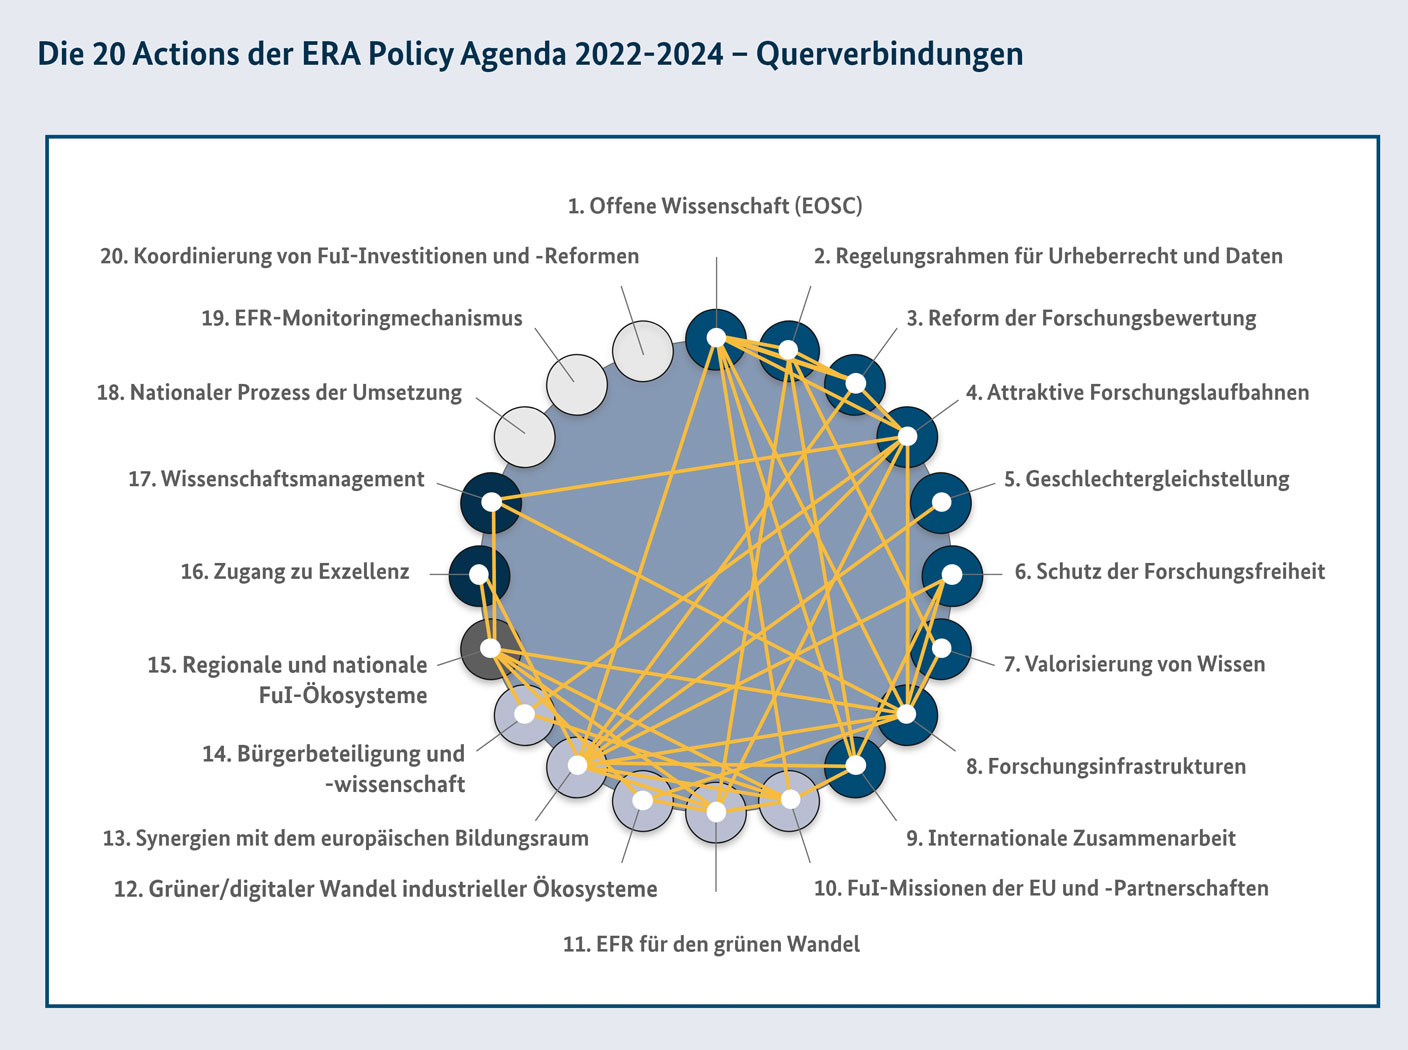 Die 20 Aktionen der ERA Policy Agenda sind in Kreisform angeordnet. Linien zwischen den Aktionen zeigen Verknüpfungen zwischen den einzelnen Aktionen an.